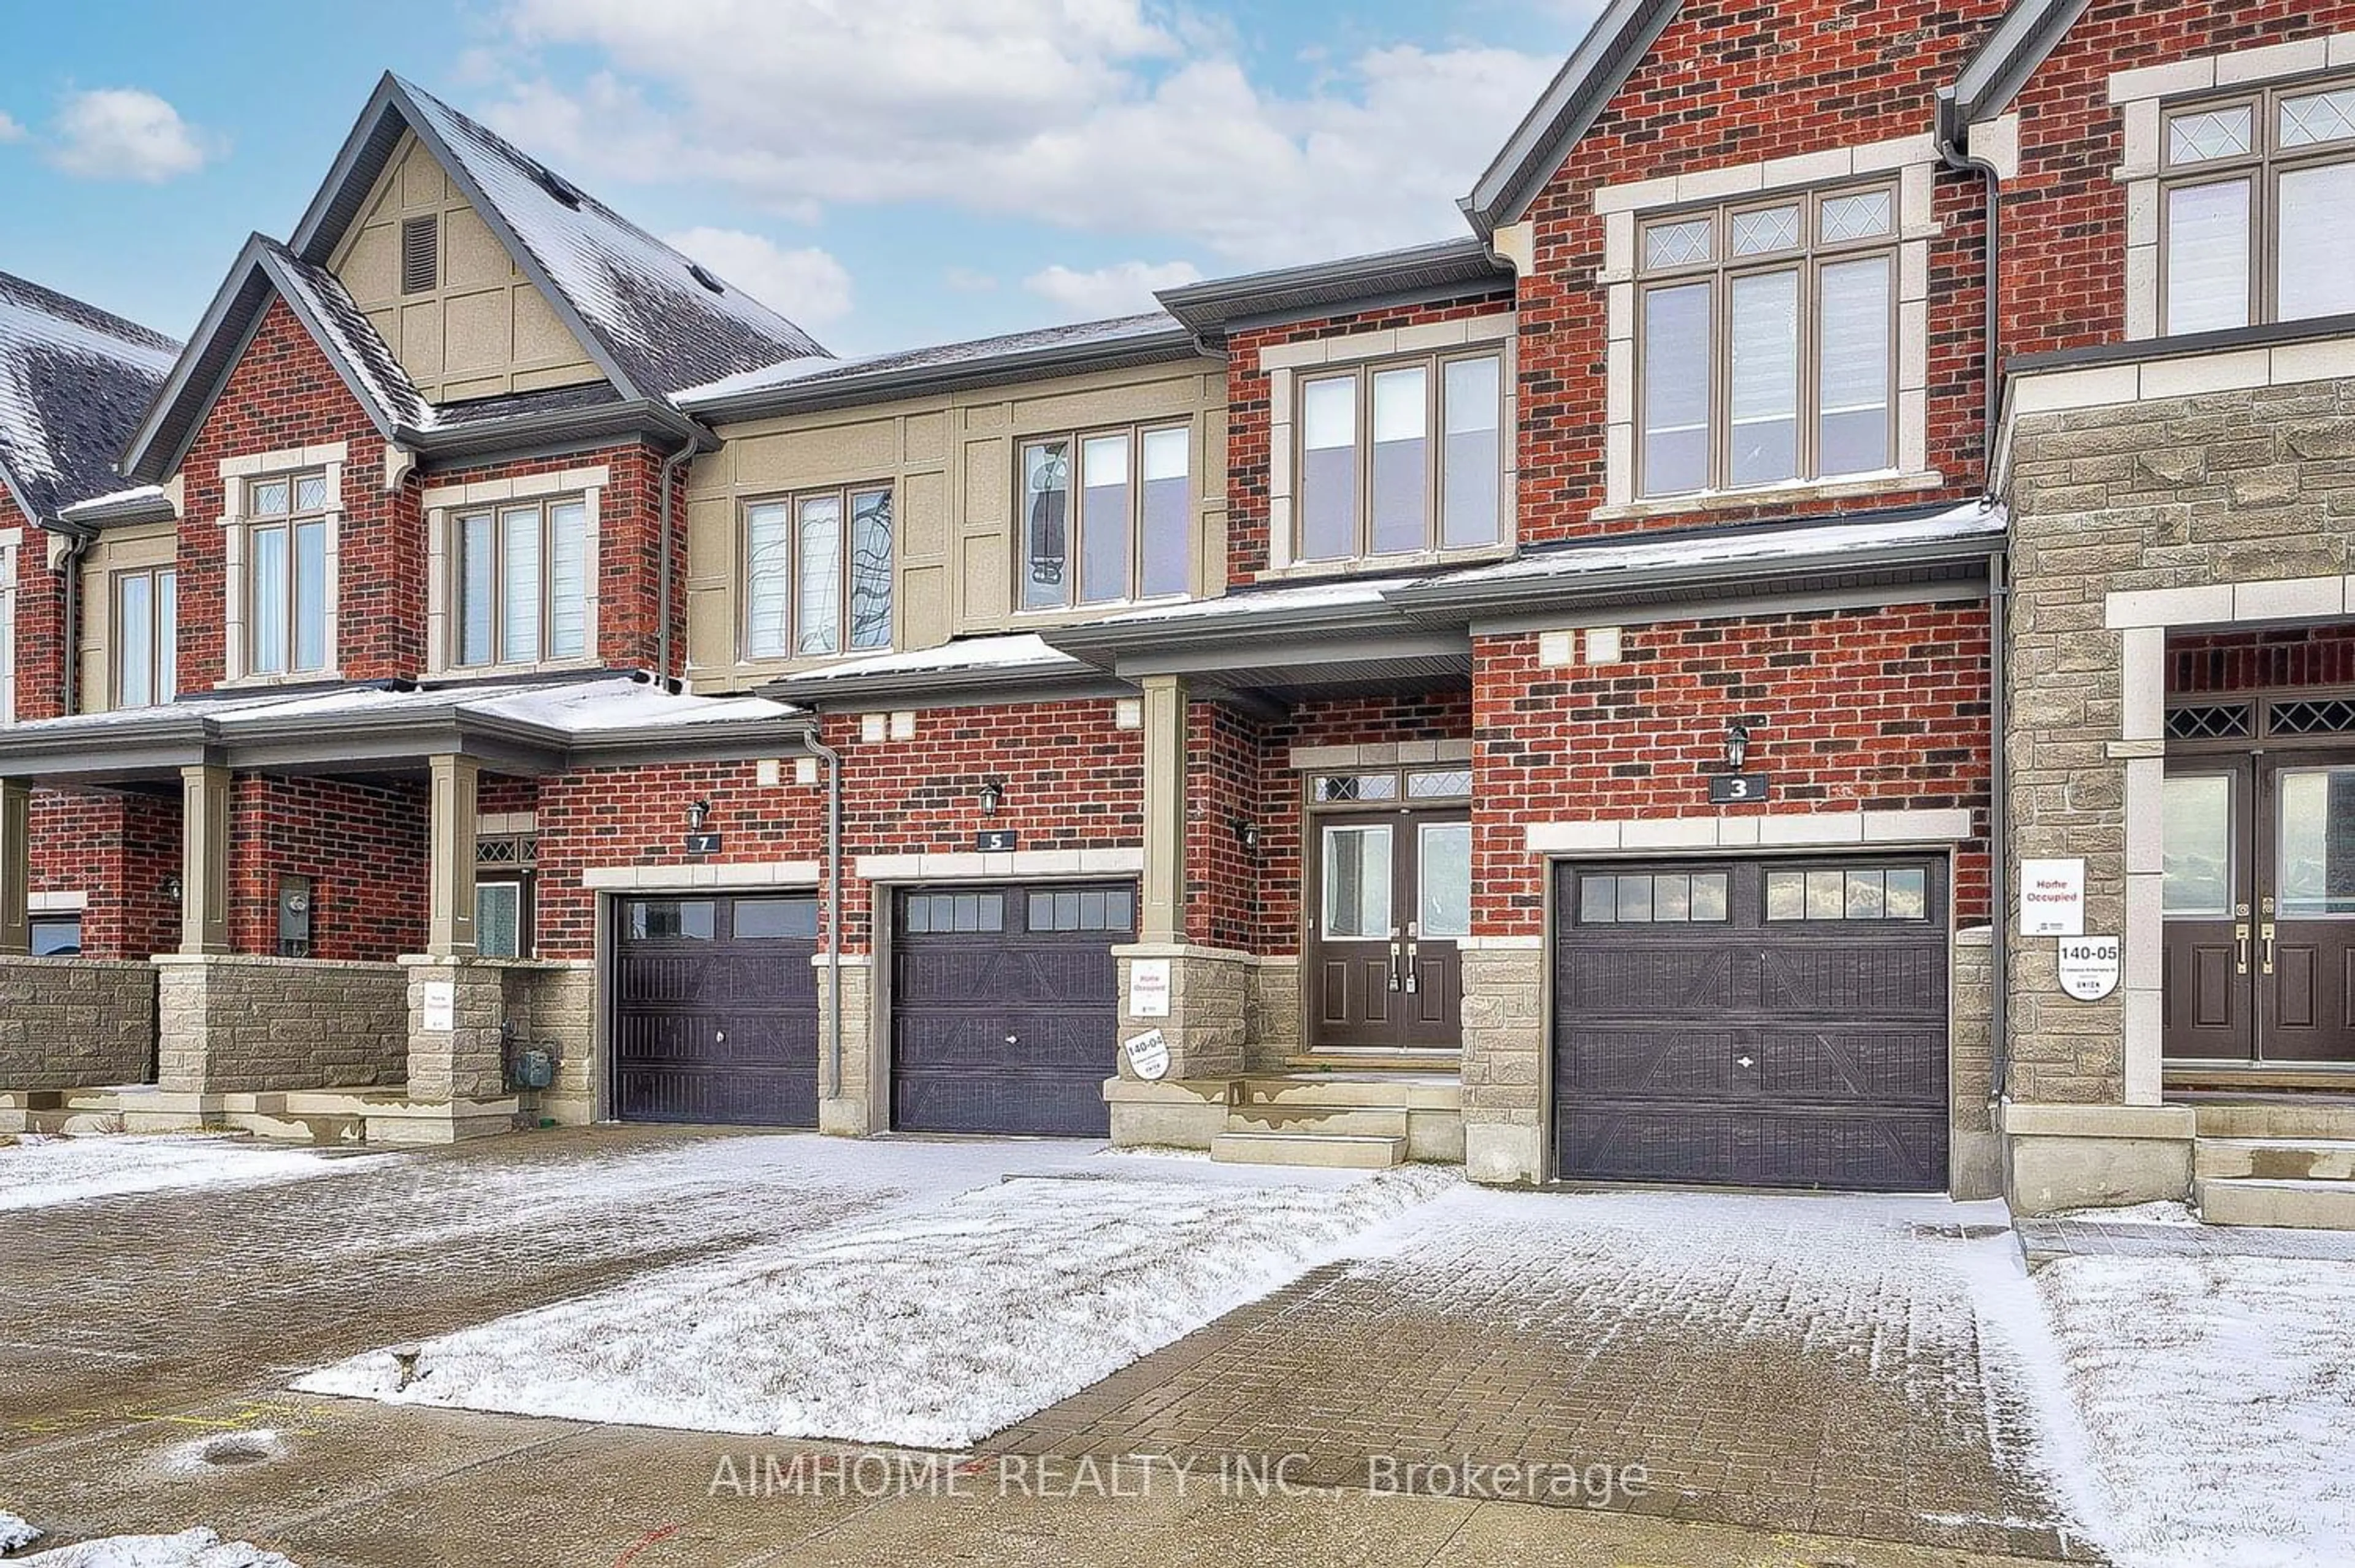 Home with brick exterior material for 5 Jessica Antonella St, Markham Ontario L6C 3J6